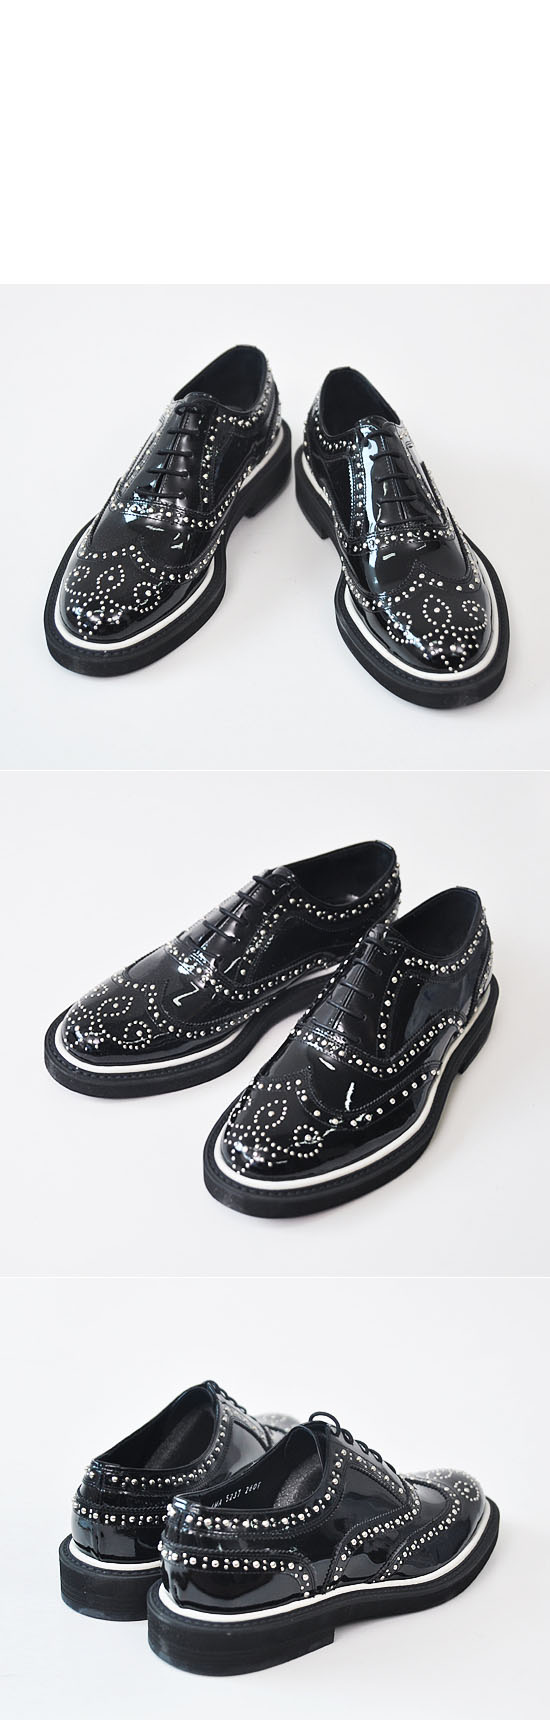 Shoes :: Designer Lux Metal Stud Wingtip-Shoes 122 - GUYLOOK Men's ...